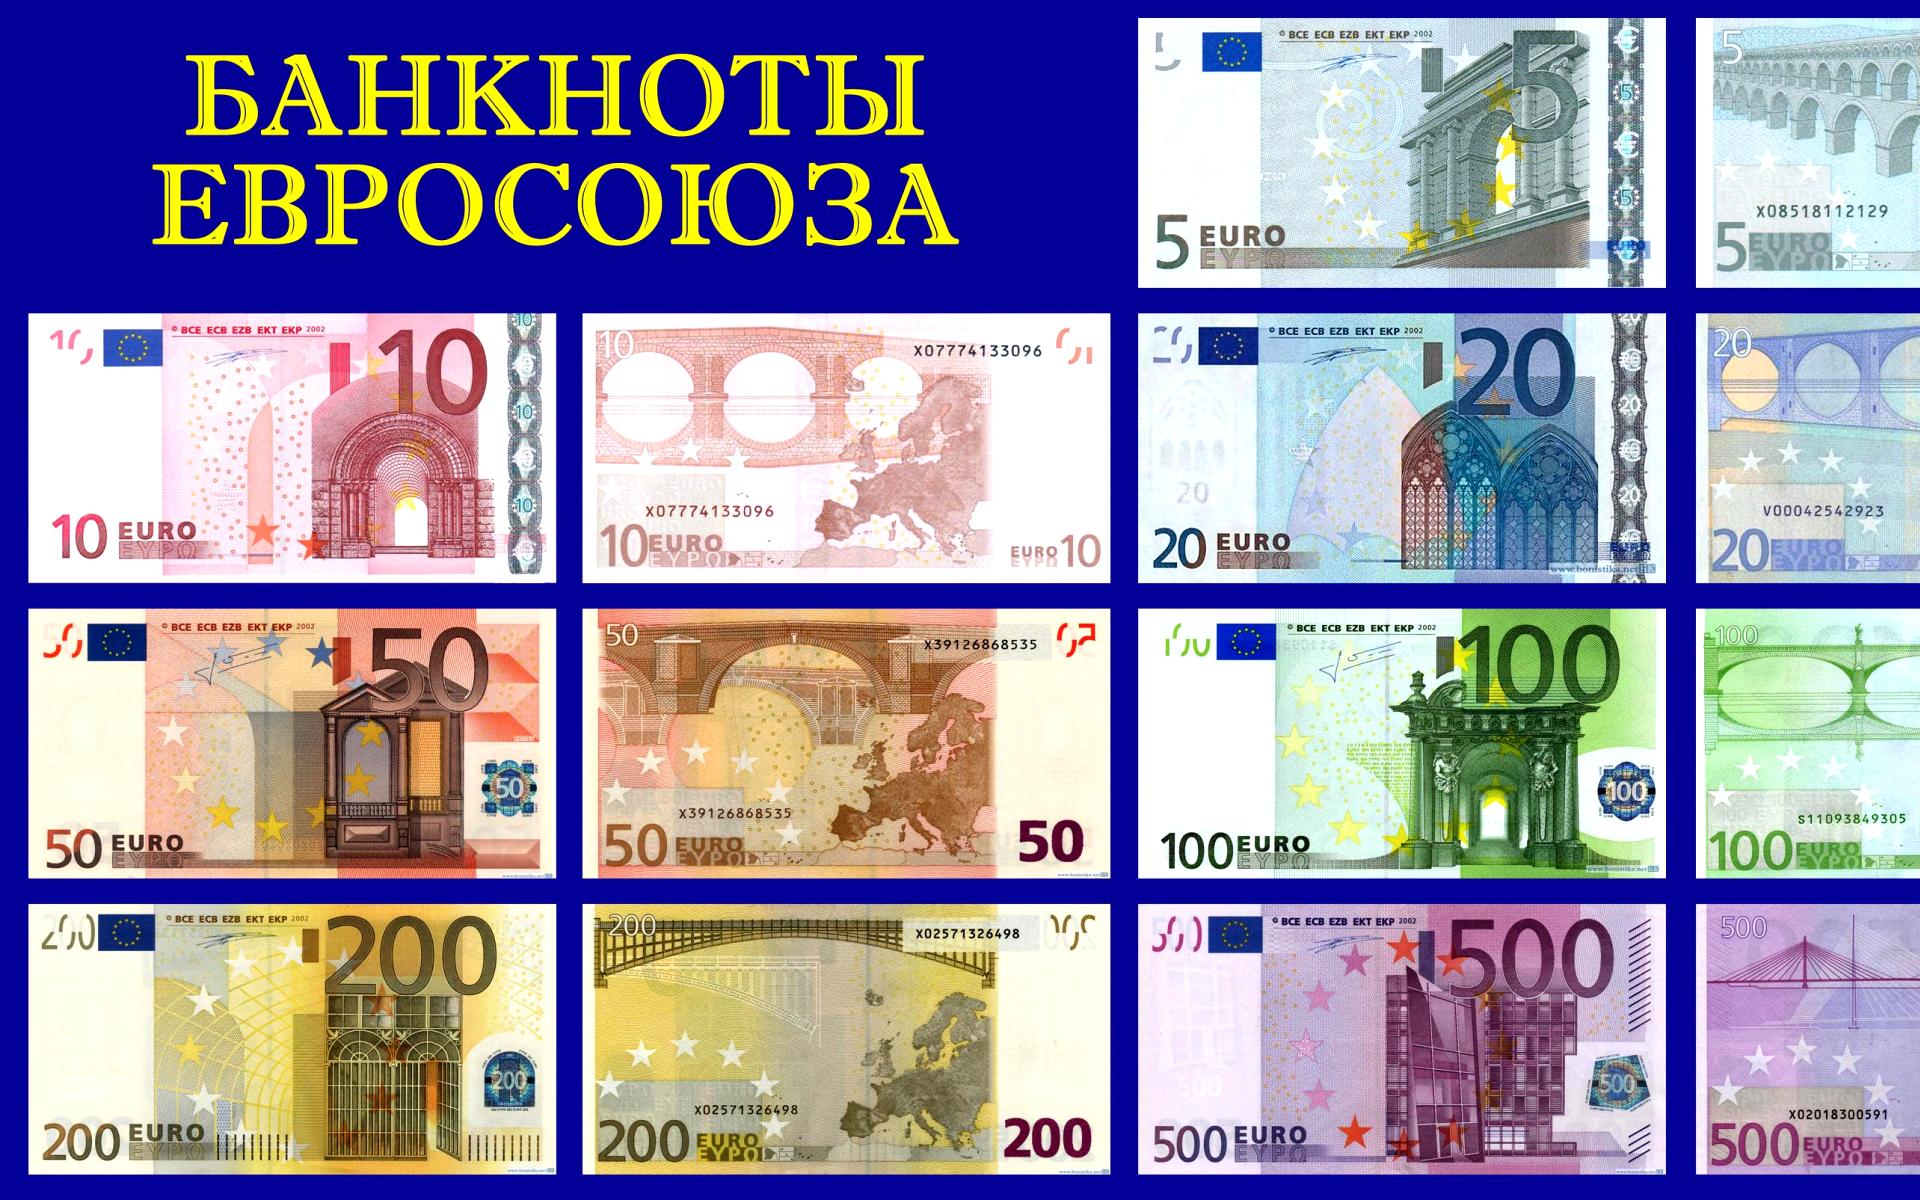 Купюры евро номиналы. Банкноты Евросоюза. Банкноты евро номинал. Фотографию банкнот Евросоюза. Максимальный номинал евро купюры.